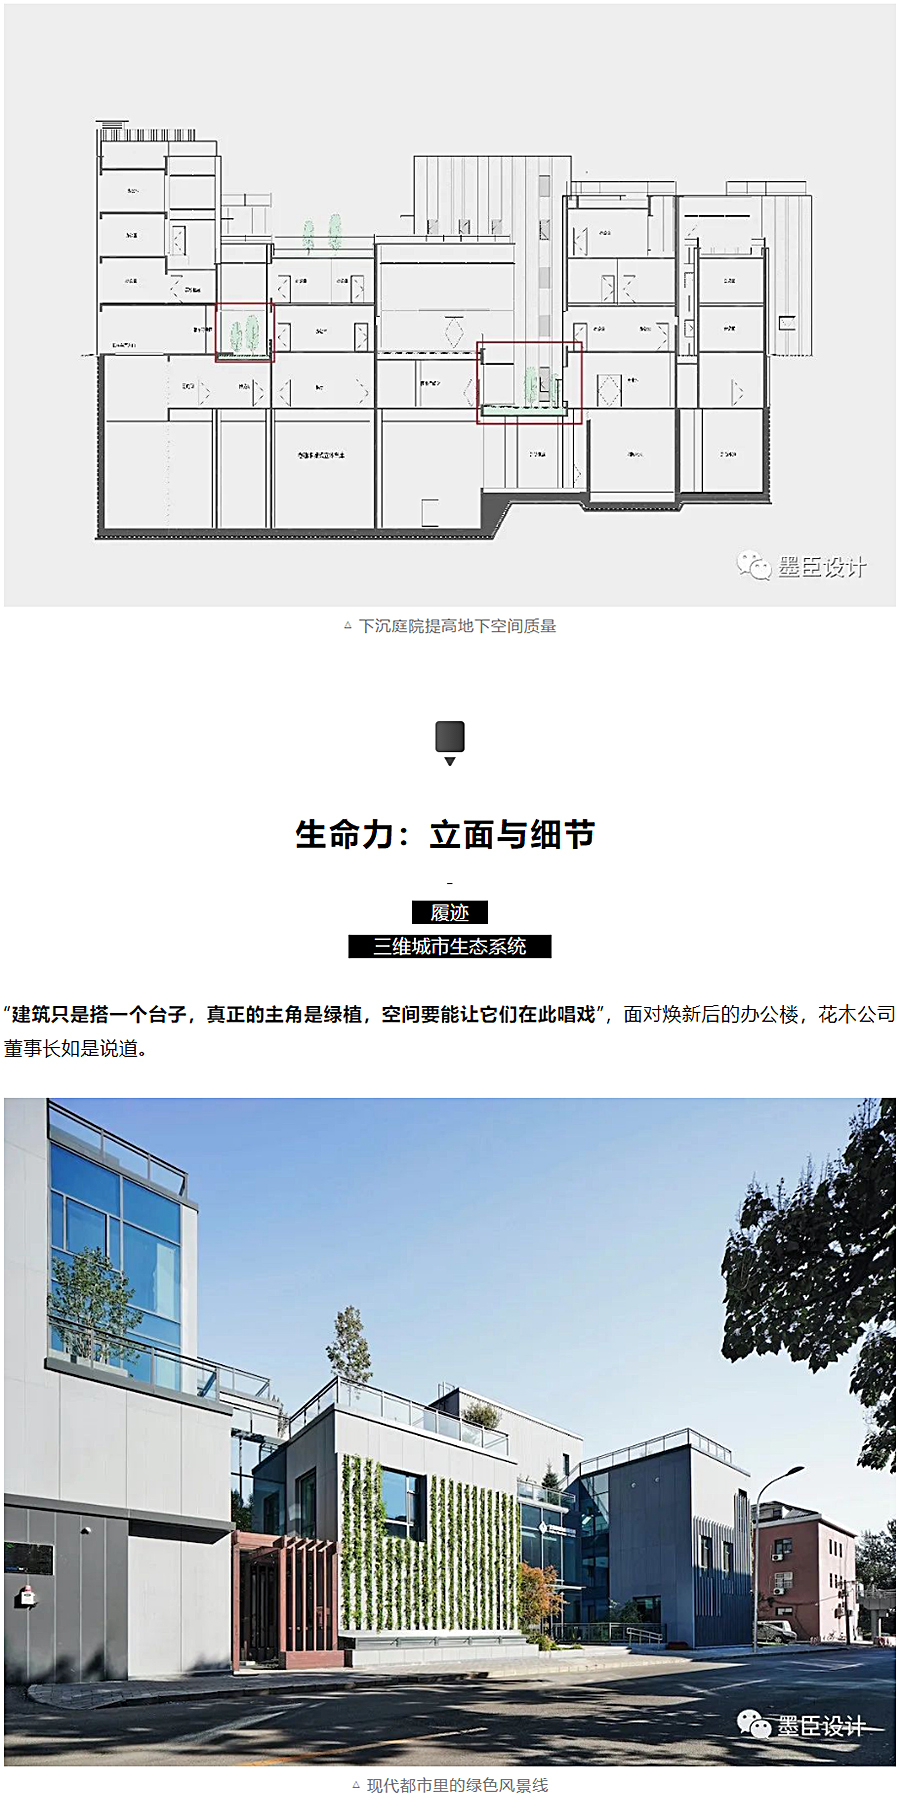 生态办公的游园序列-_-北京花木公司办公楼改造_0017_图层-18.jpg